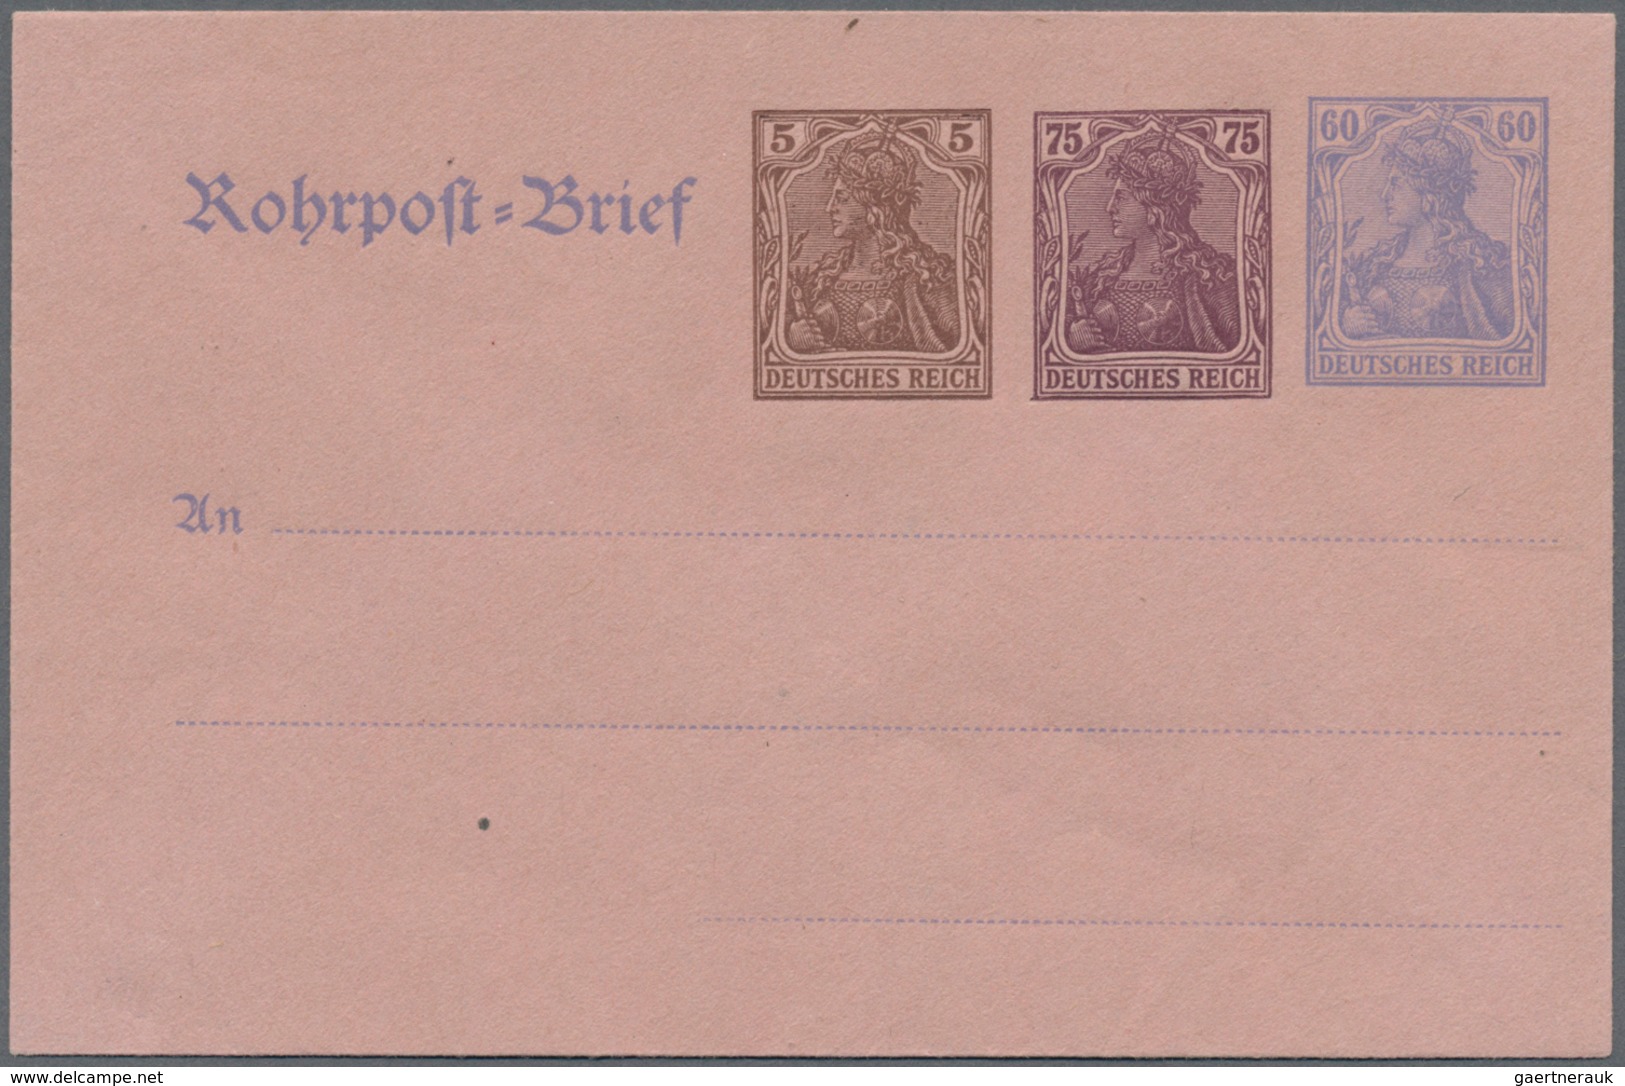 Deutsches Reich - Ganzsachen: 1920. Komplettes Set mit allen 8 Umschlägen. Ungebraucht. (Michel 375,